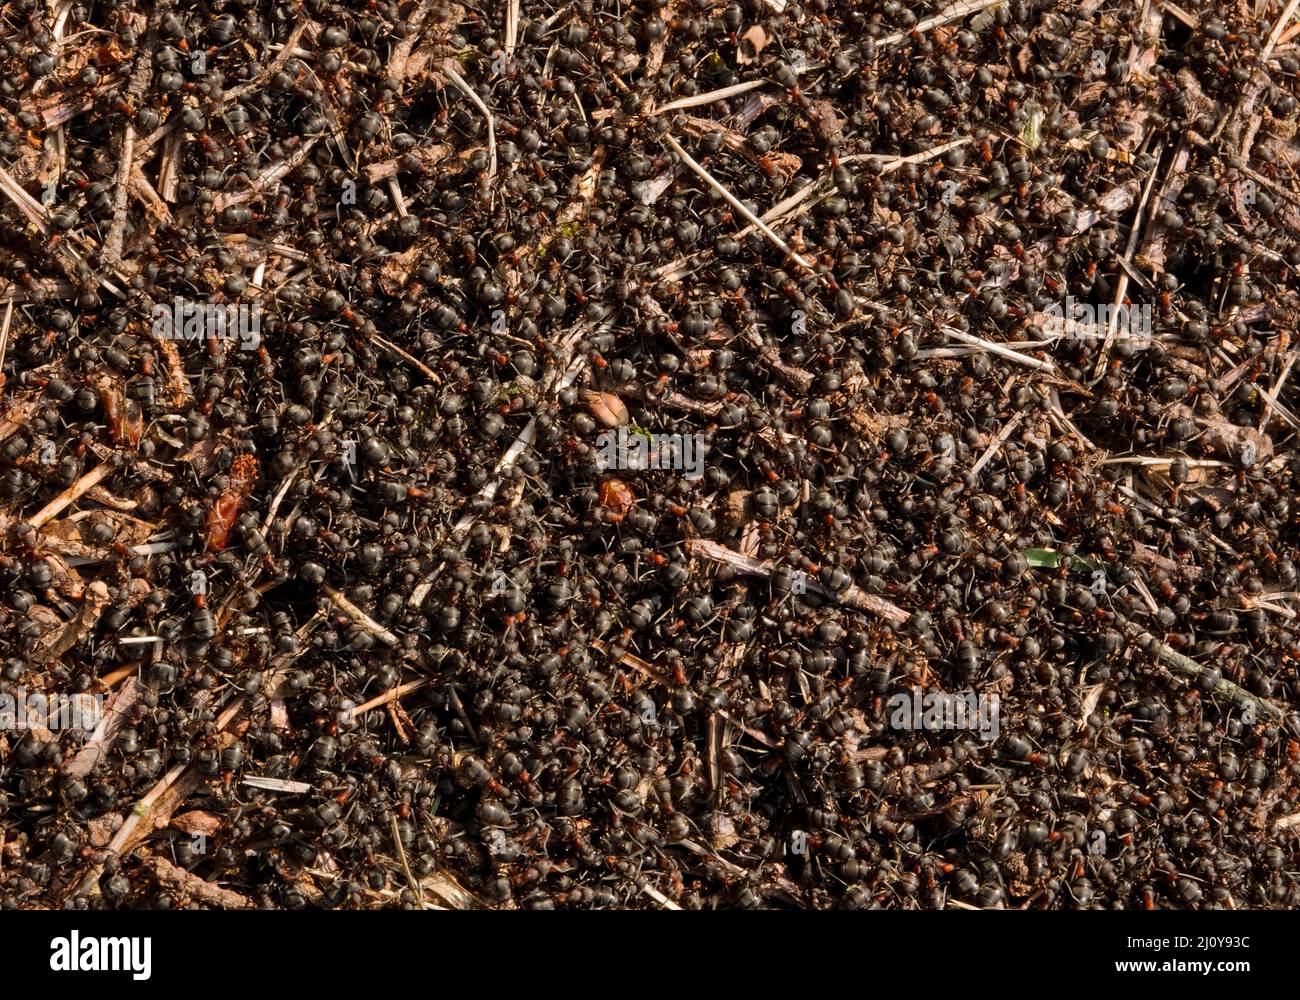 Vista superior de la hormiga de hormigas rojas de madera, hormigas que se arrastran por encima Foto de stock